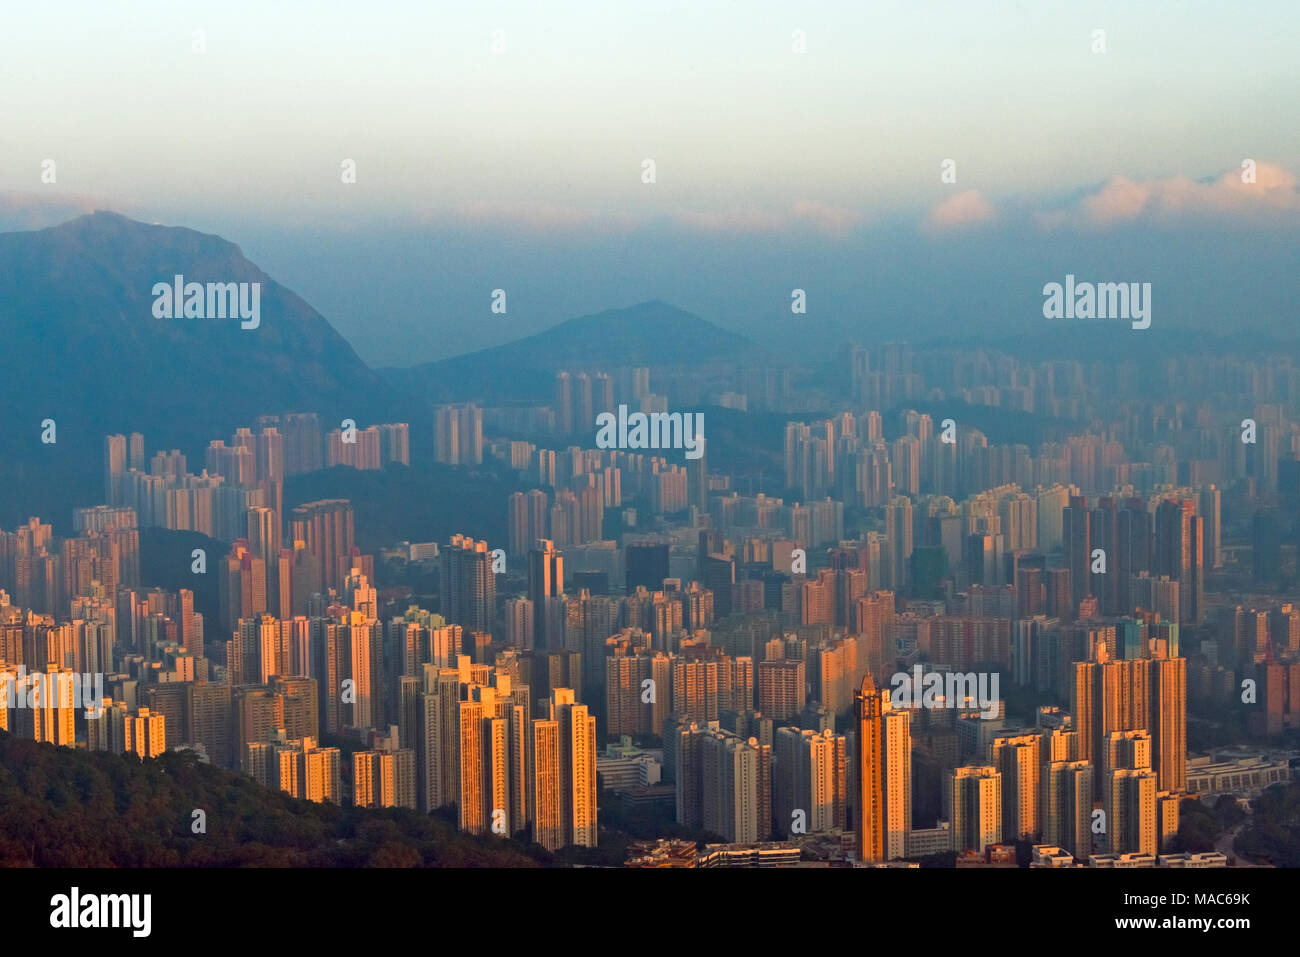 Morning view of high rises, Hong Kong, China Stock Photo